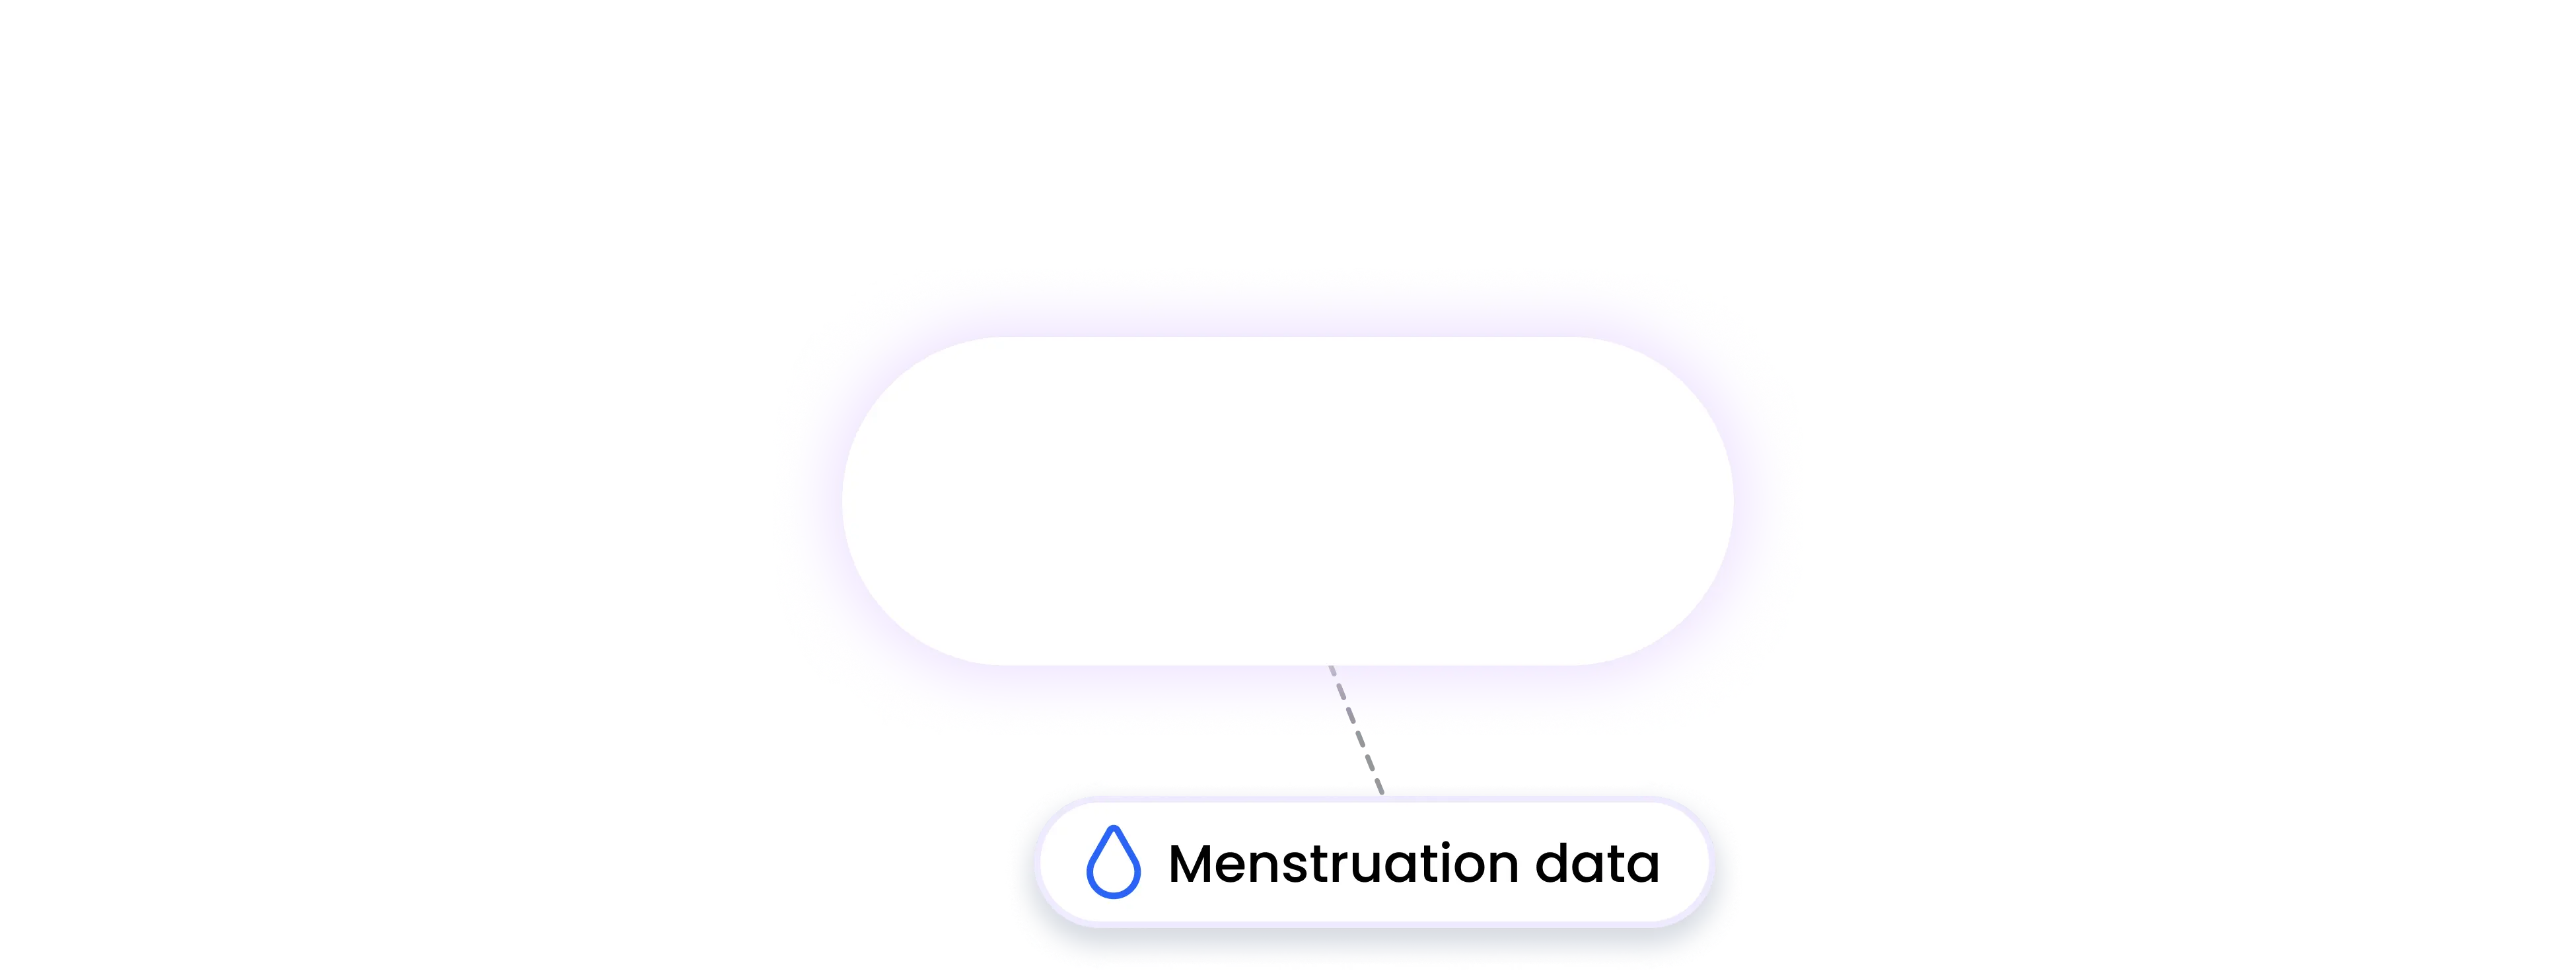 googlefit integration MENSTRUATION data